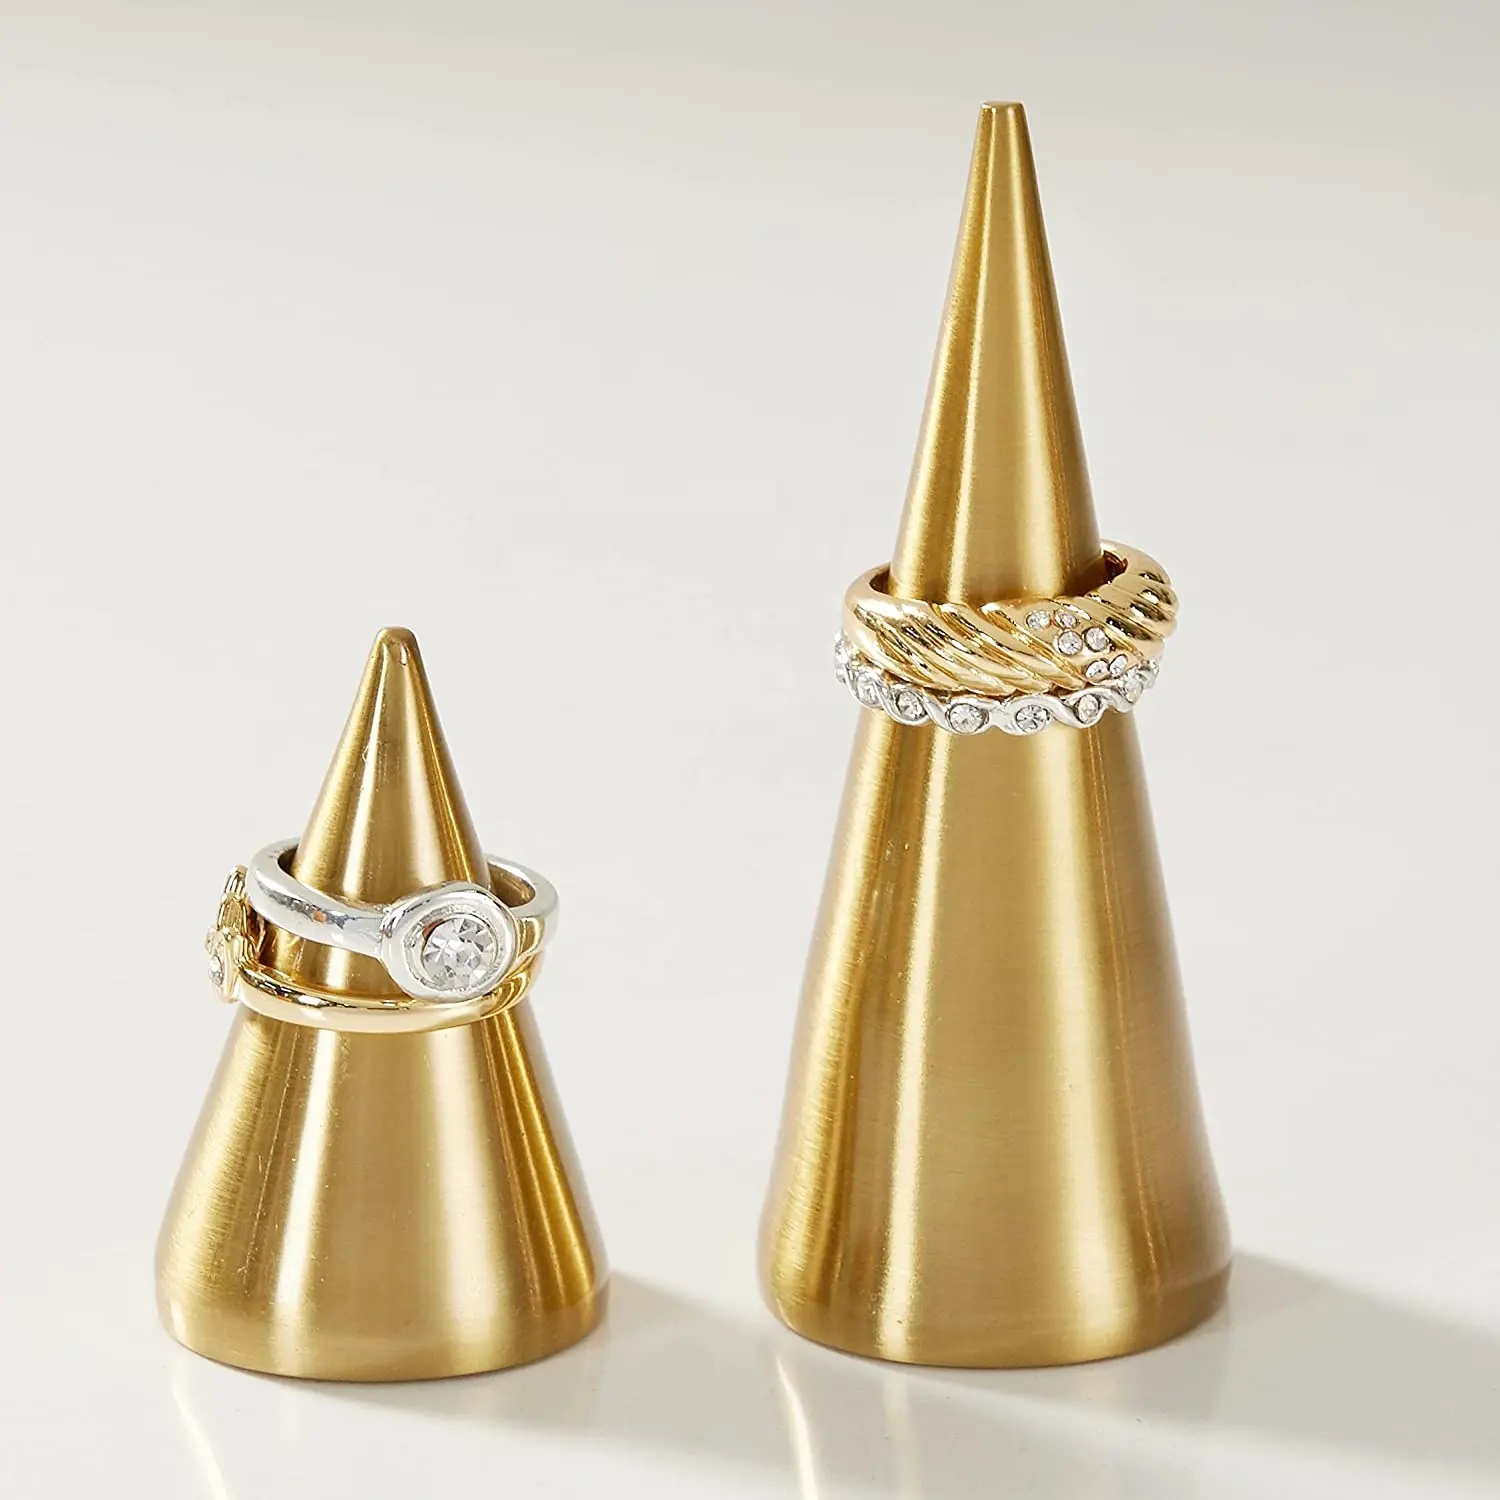 2 قطعة الذهب مجوهرات نحاسية عرض برج حامل الهرم حلقة معدنية مخروط خاتم الخطوبة حامل